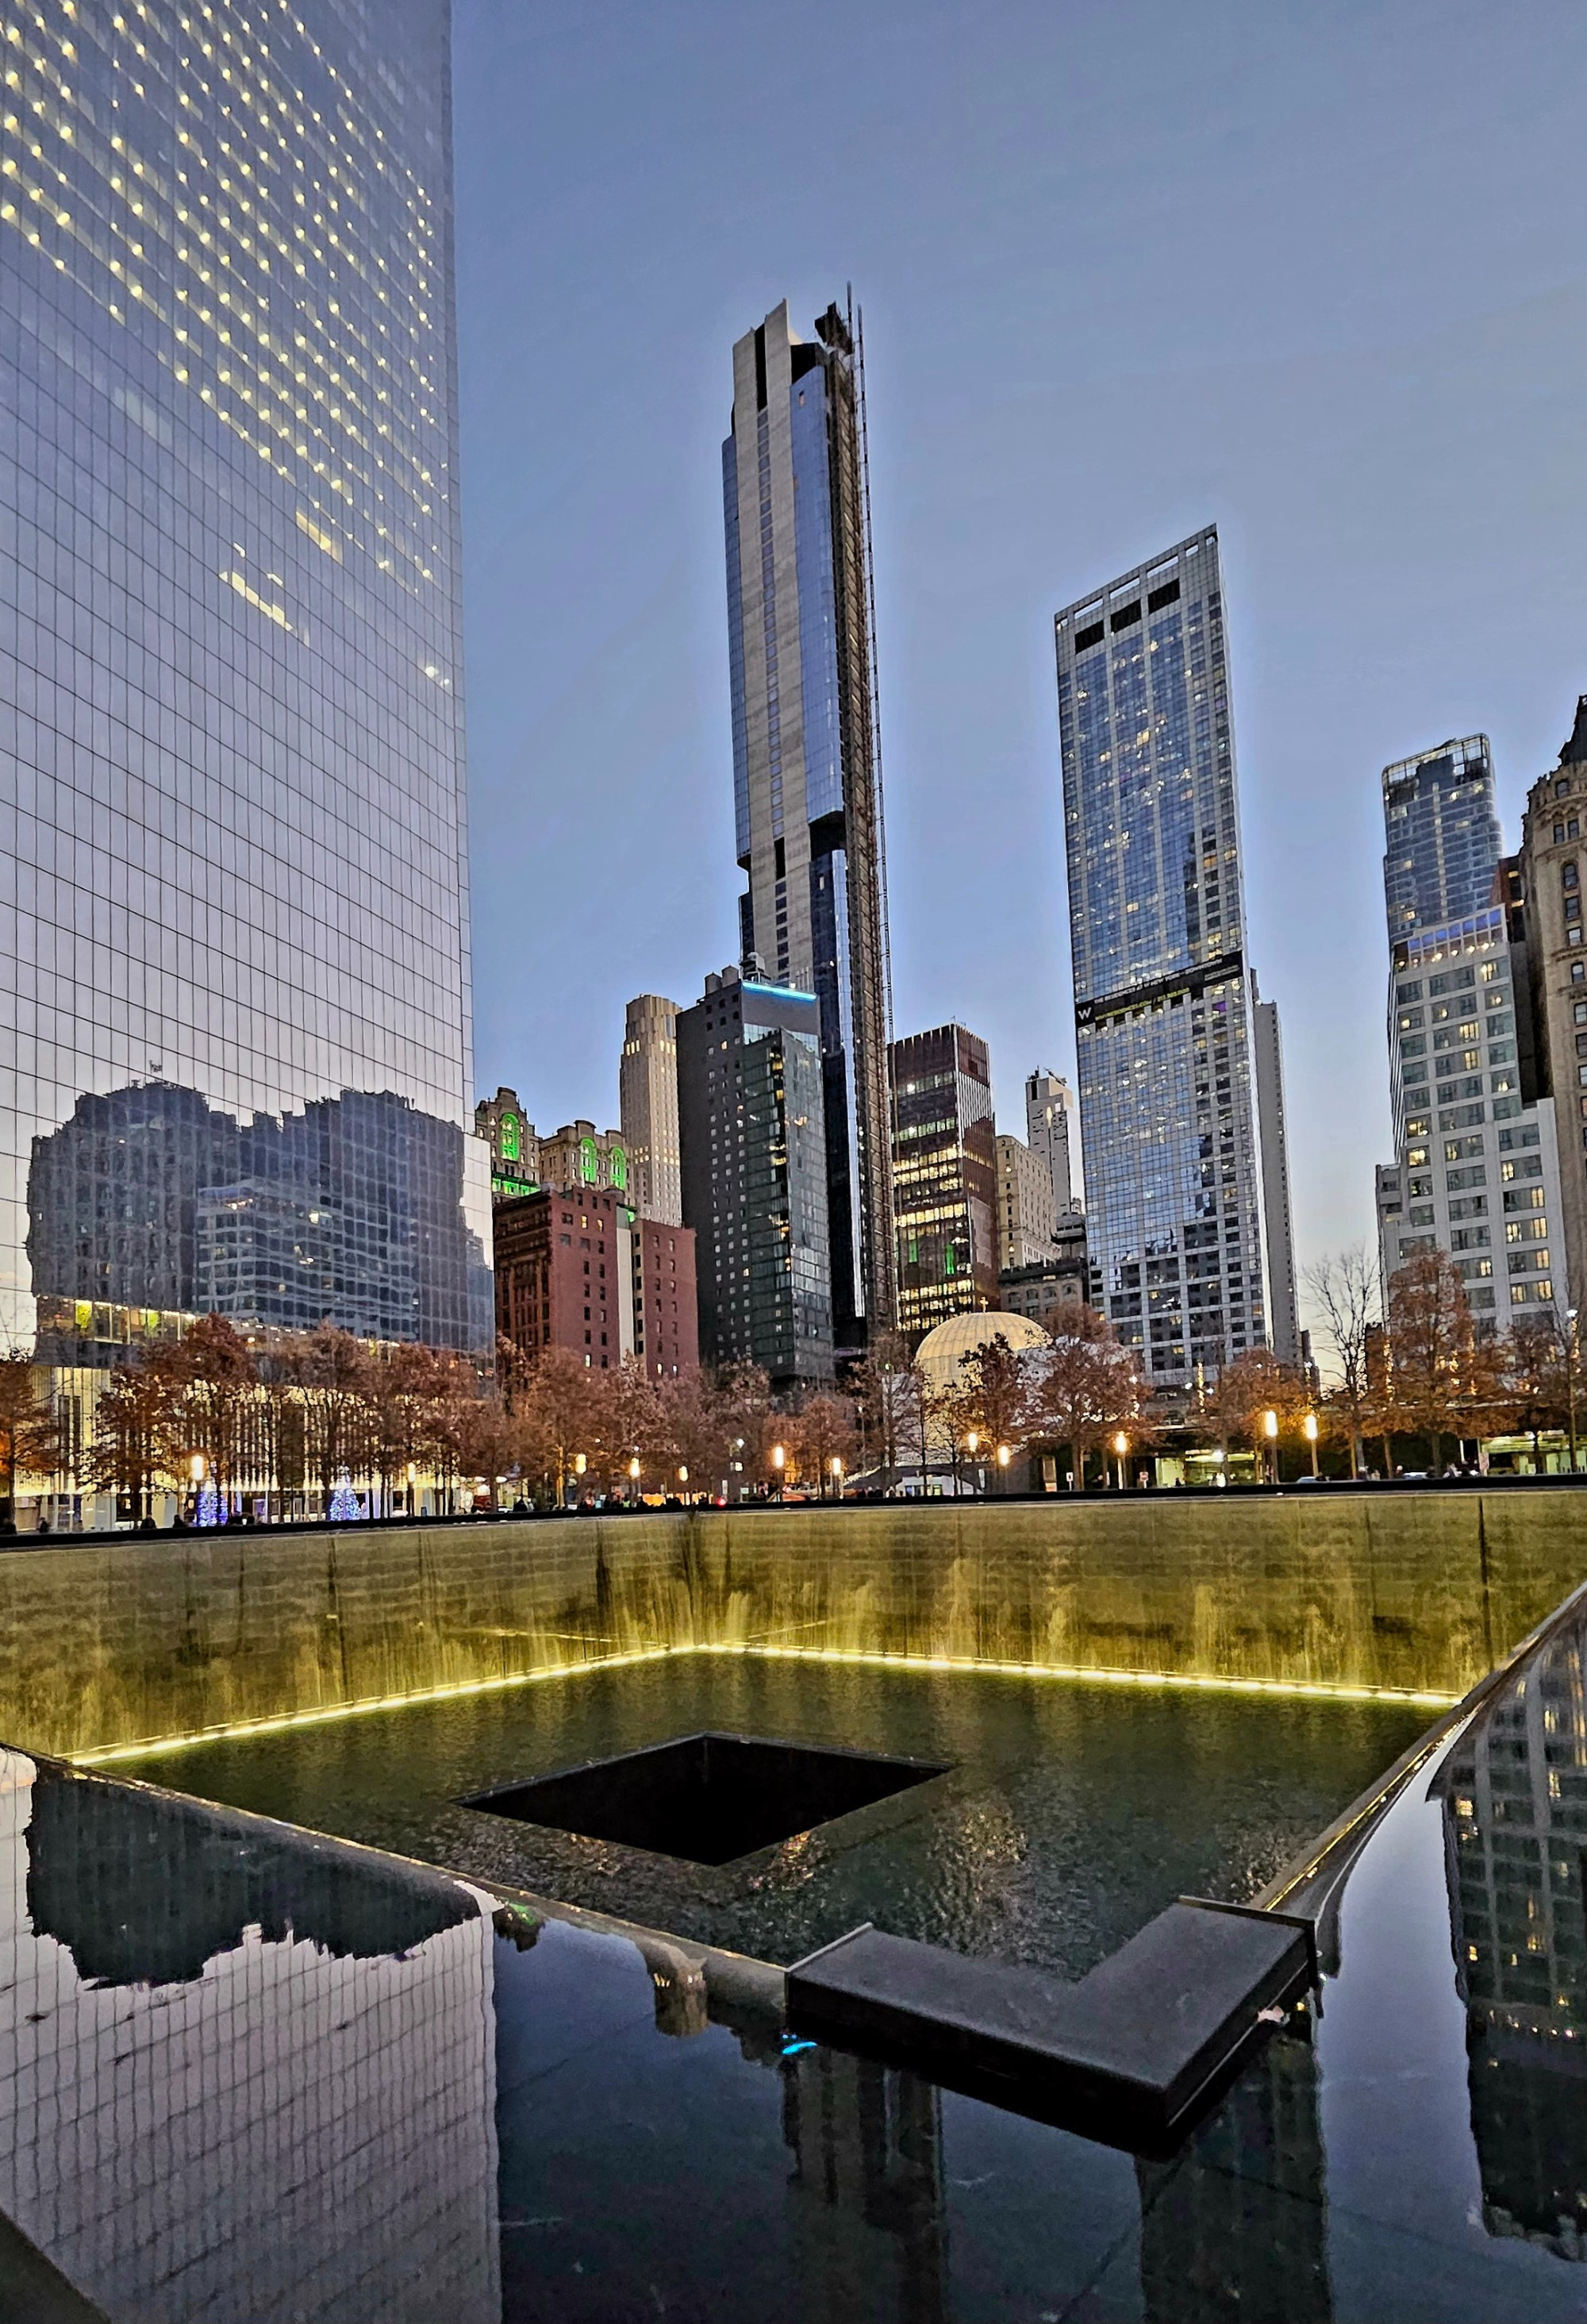 Ground Zero in NYC